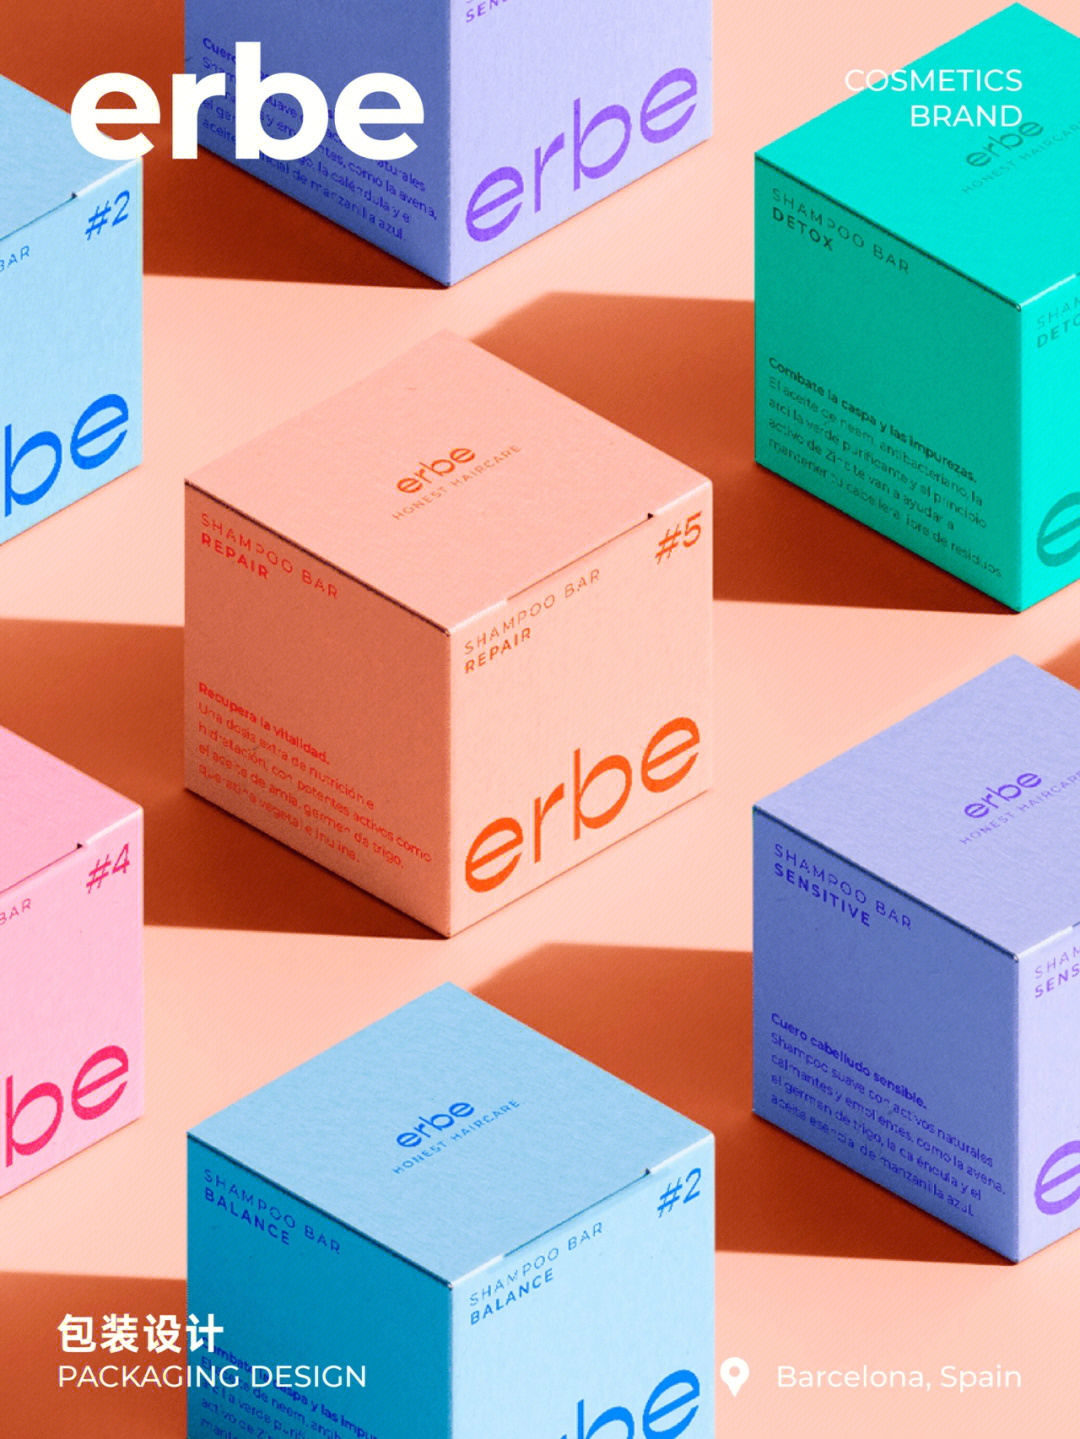 包装设计分享erbe西班牙天然化妆品